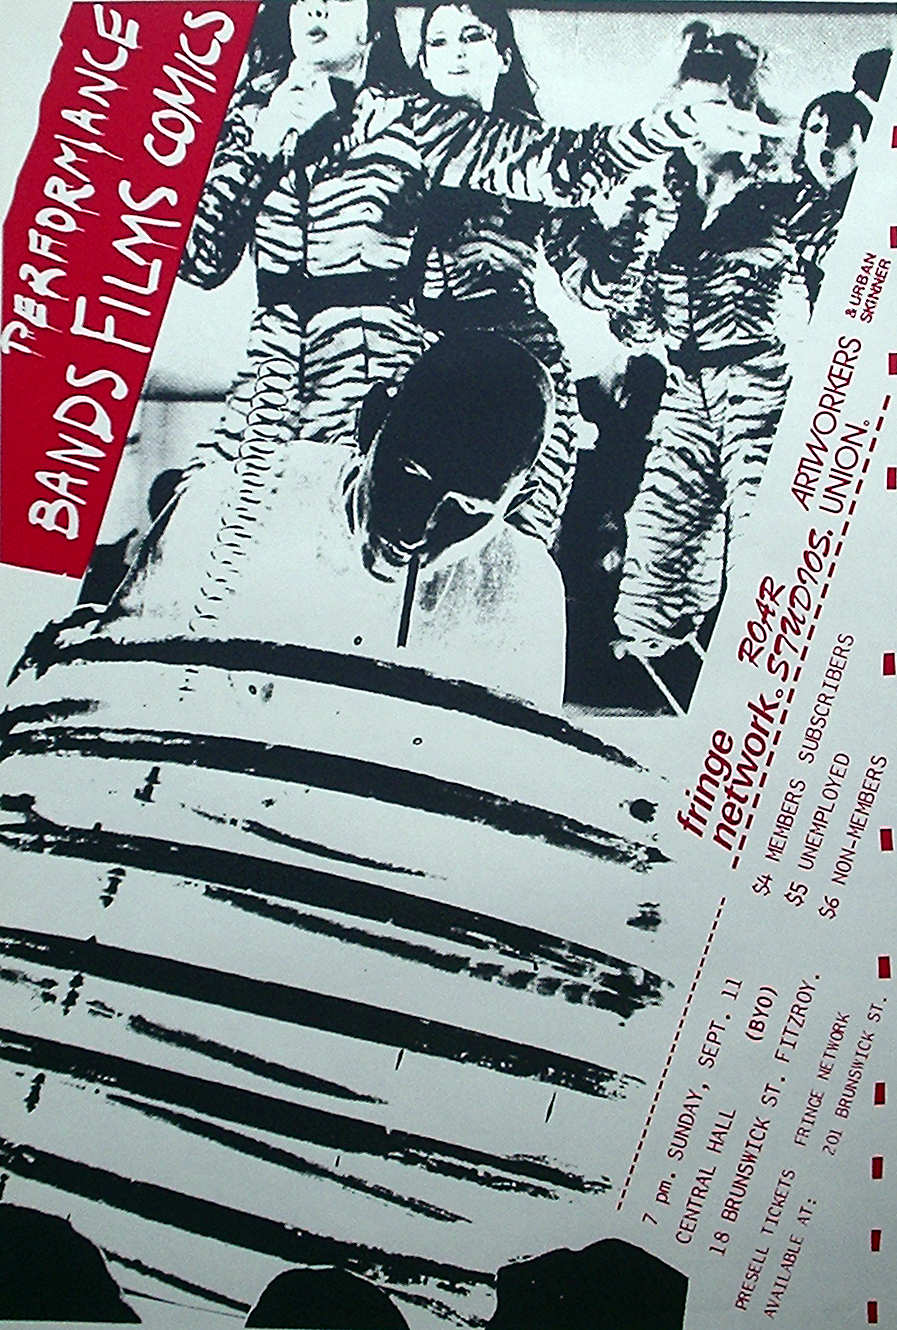 First Melbourne Fringe Festival poster